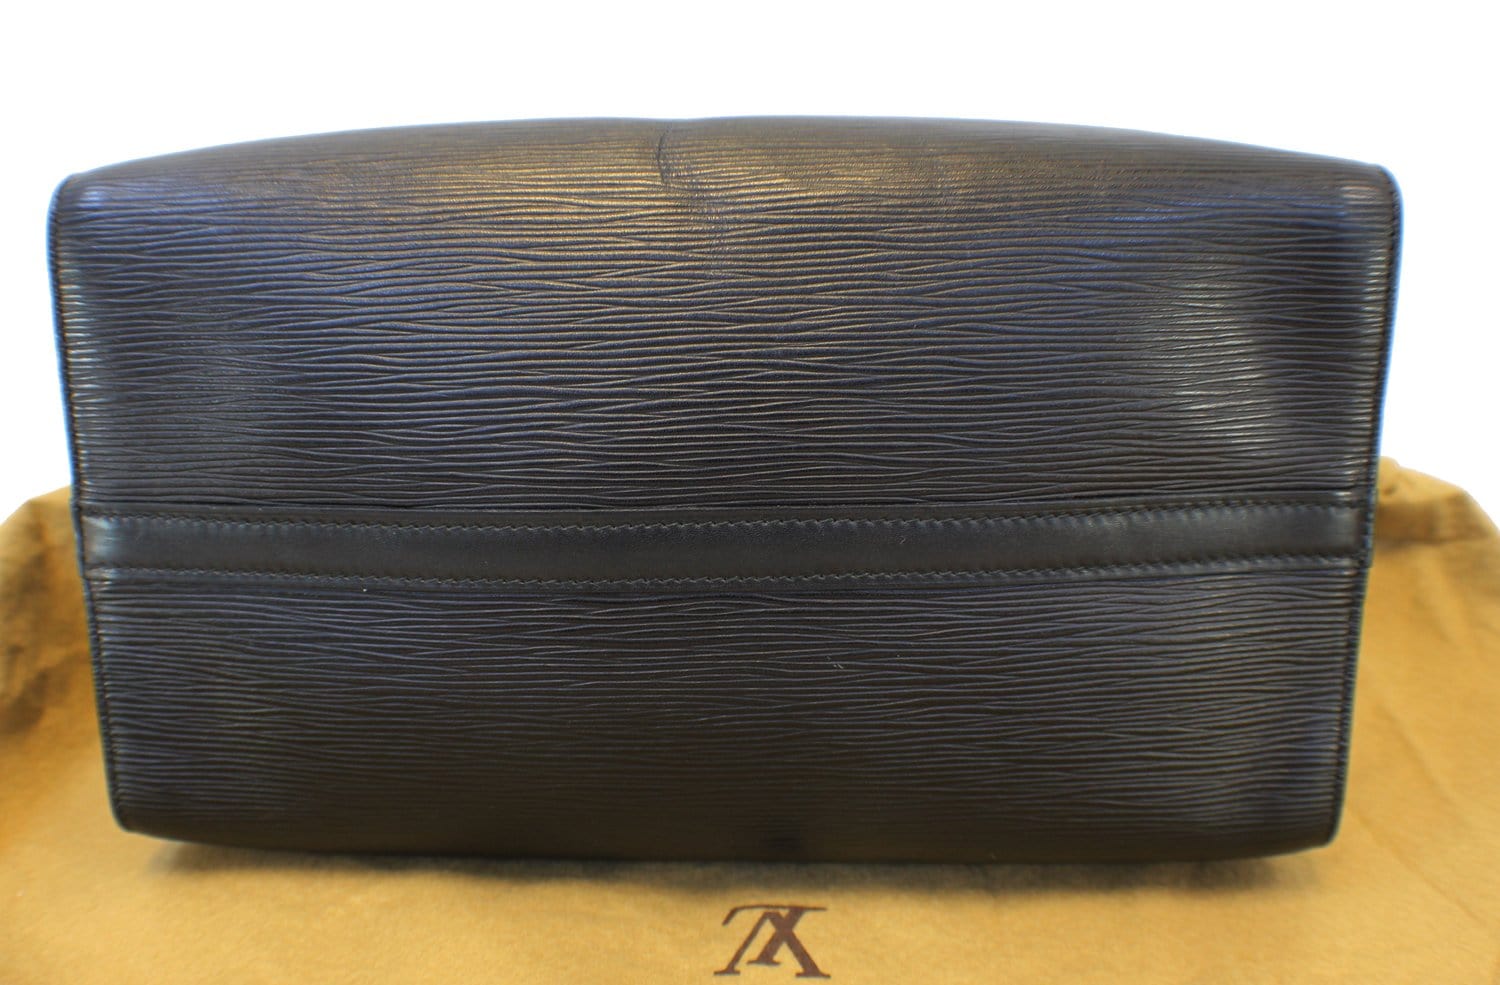 Authentic LOUIS VUITTON Epi Leather Black Speedy 30 Satchel Bag TT1450